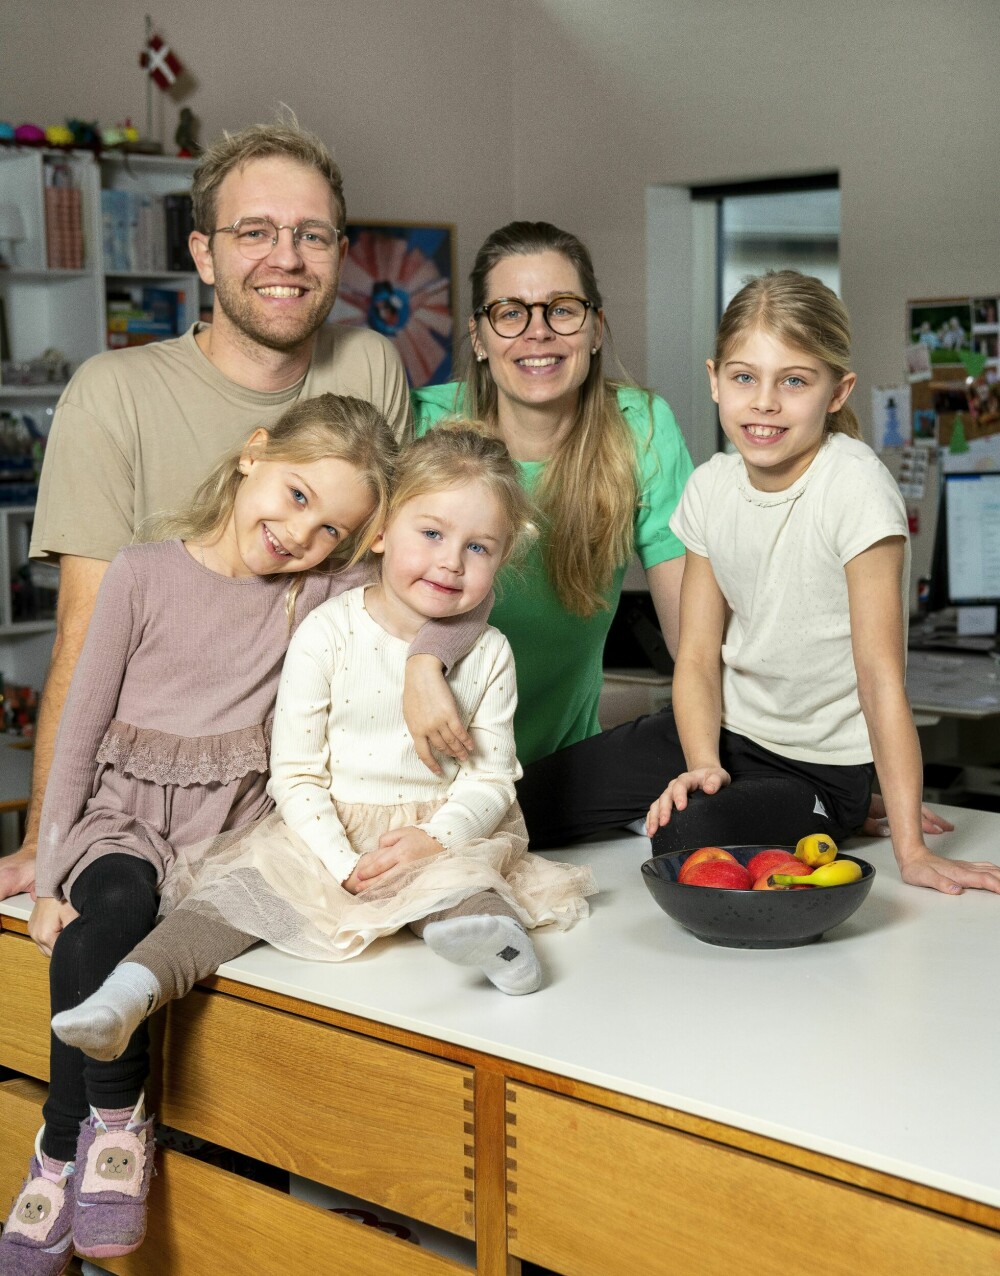 <b>SAMLET:</b> Familien samlet på kjøkkenet. Foran foreldrene Peter og Mette står Merle, Lærke og Silje. 